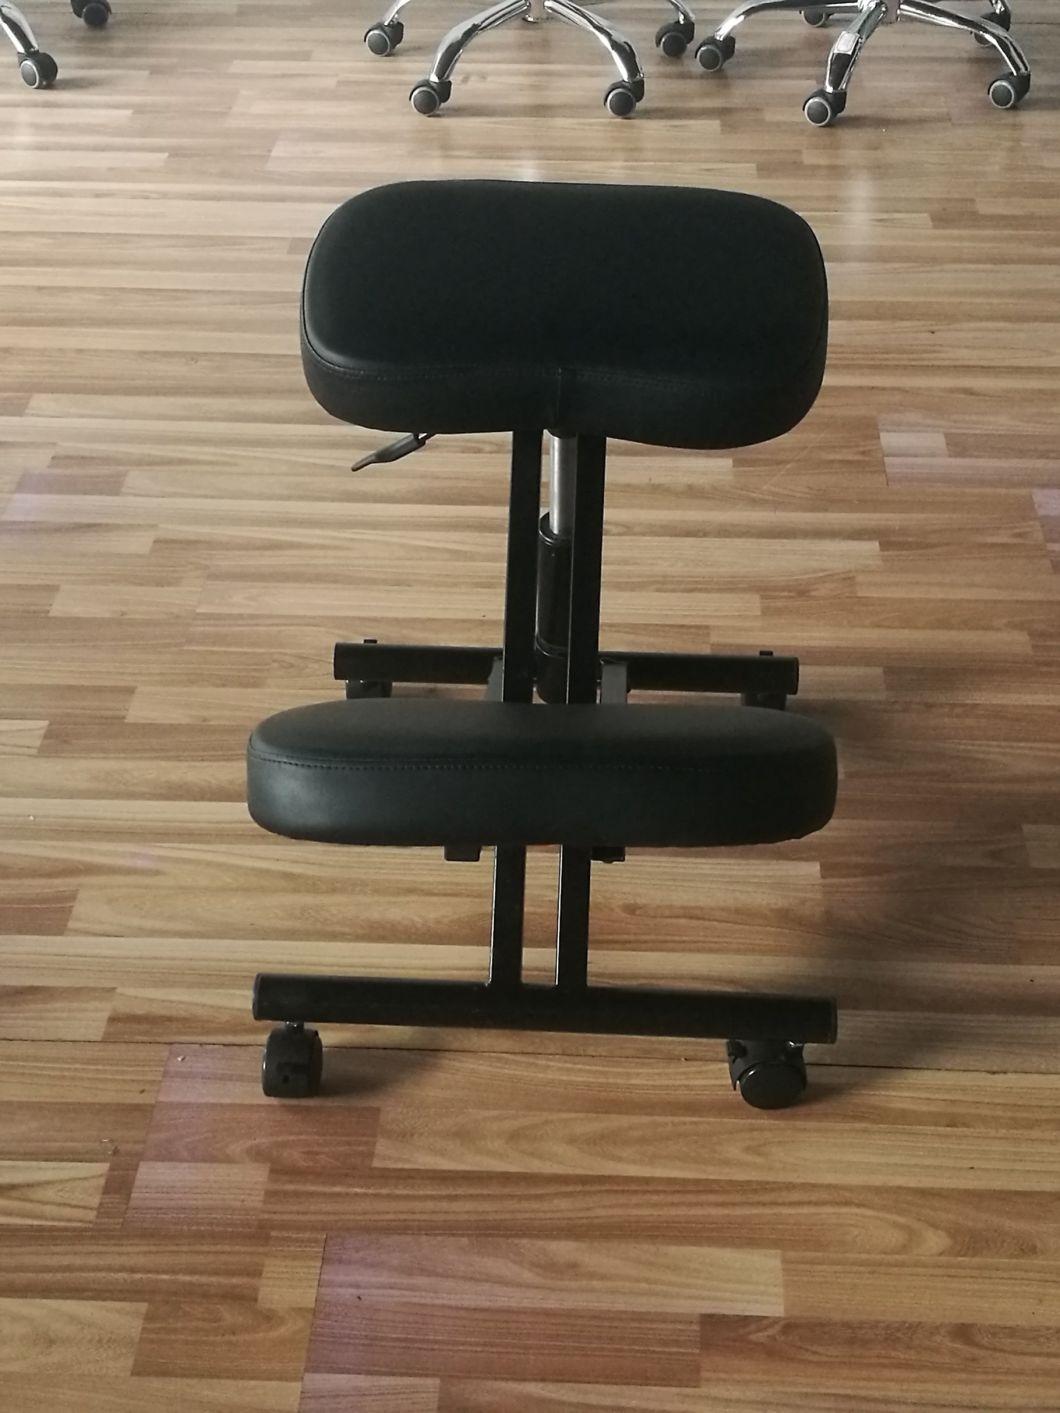 Wood Adjustbale Meditation Stool Kneeling Chair